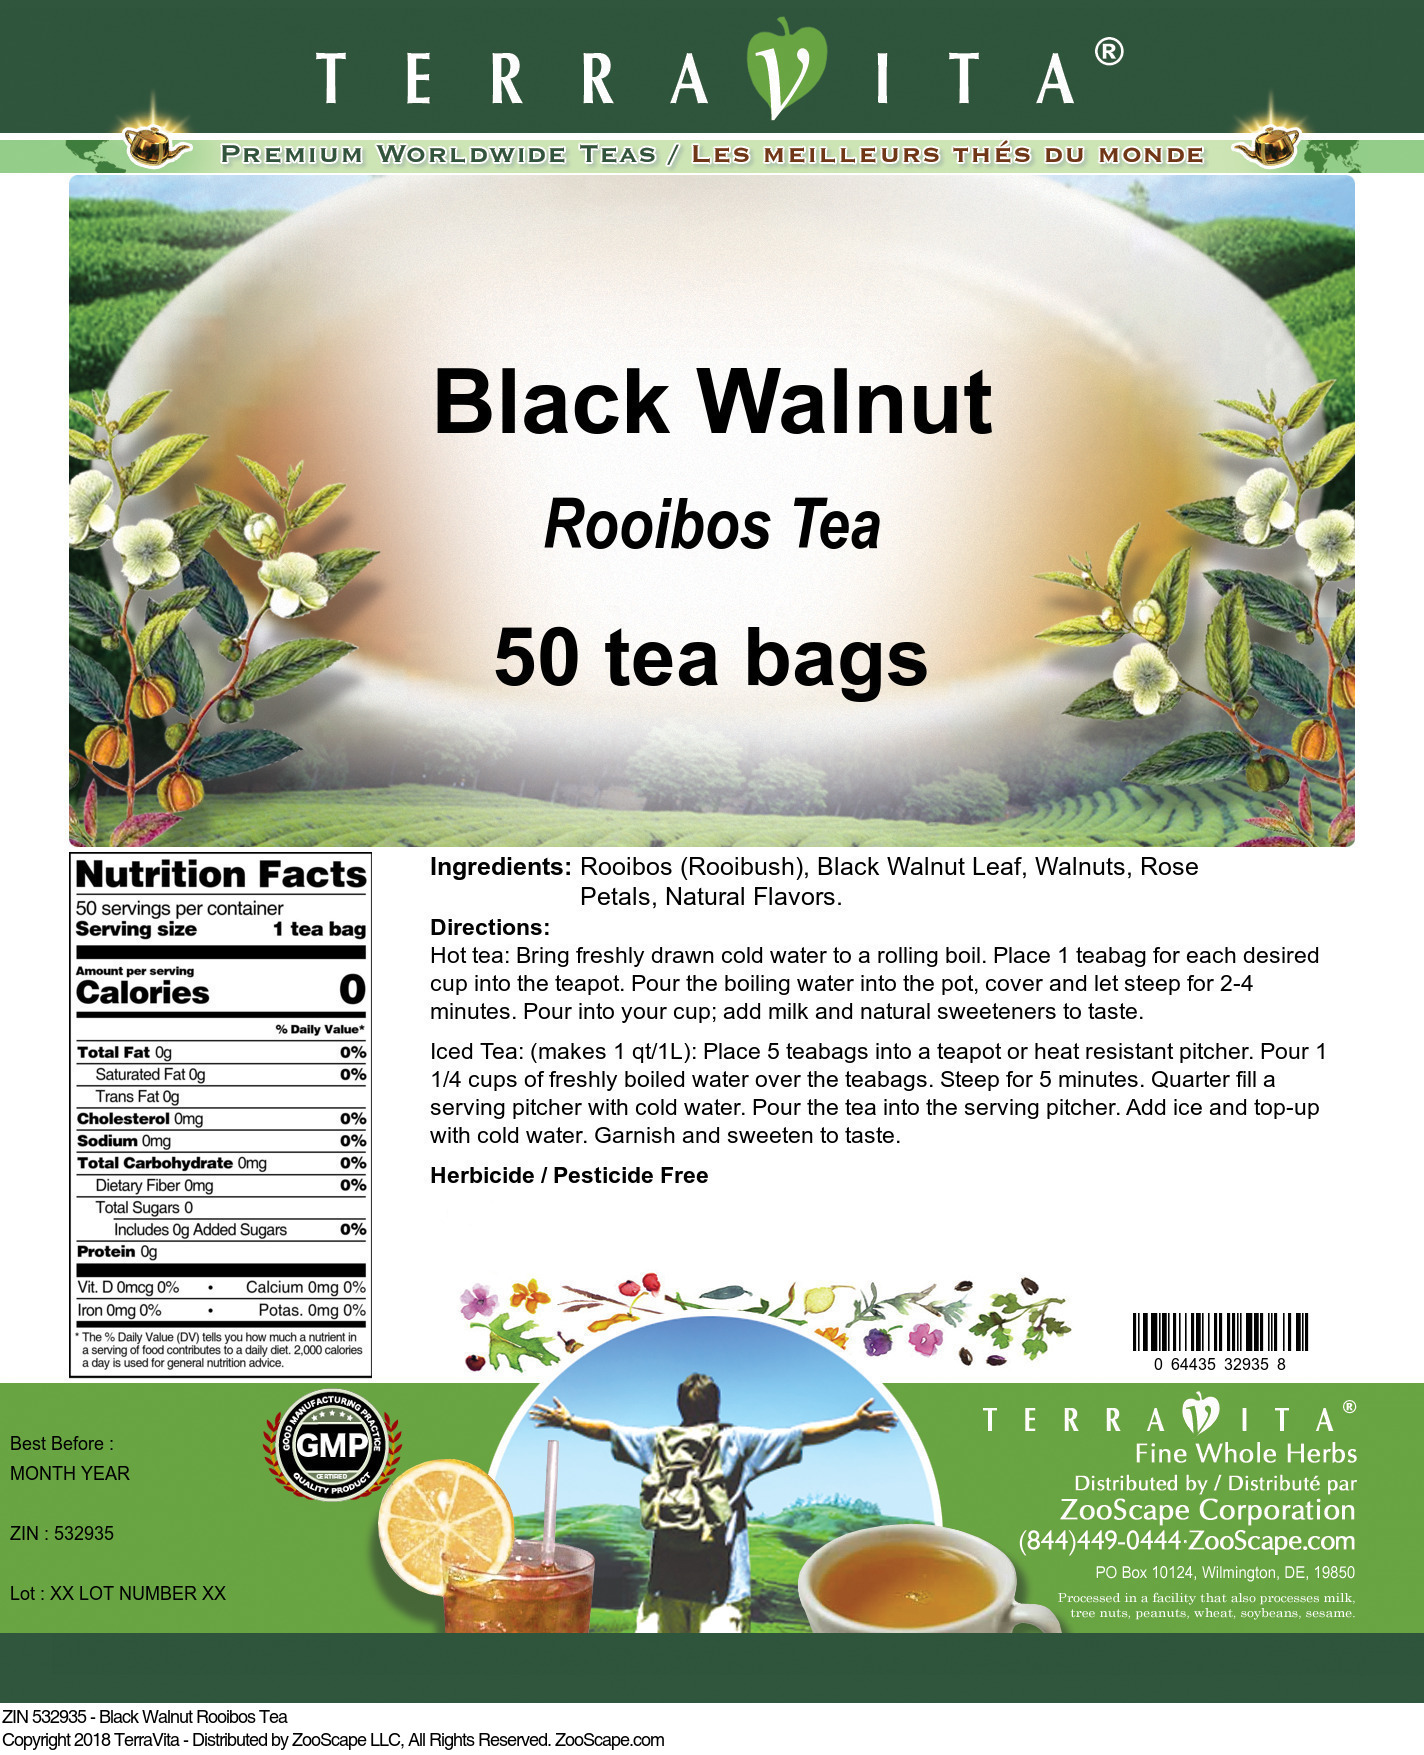 Black Walnut Rooibos Tea - Label